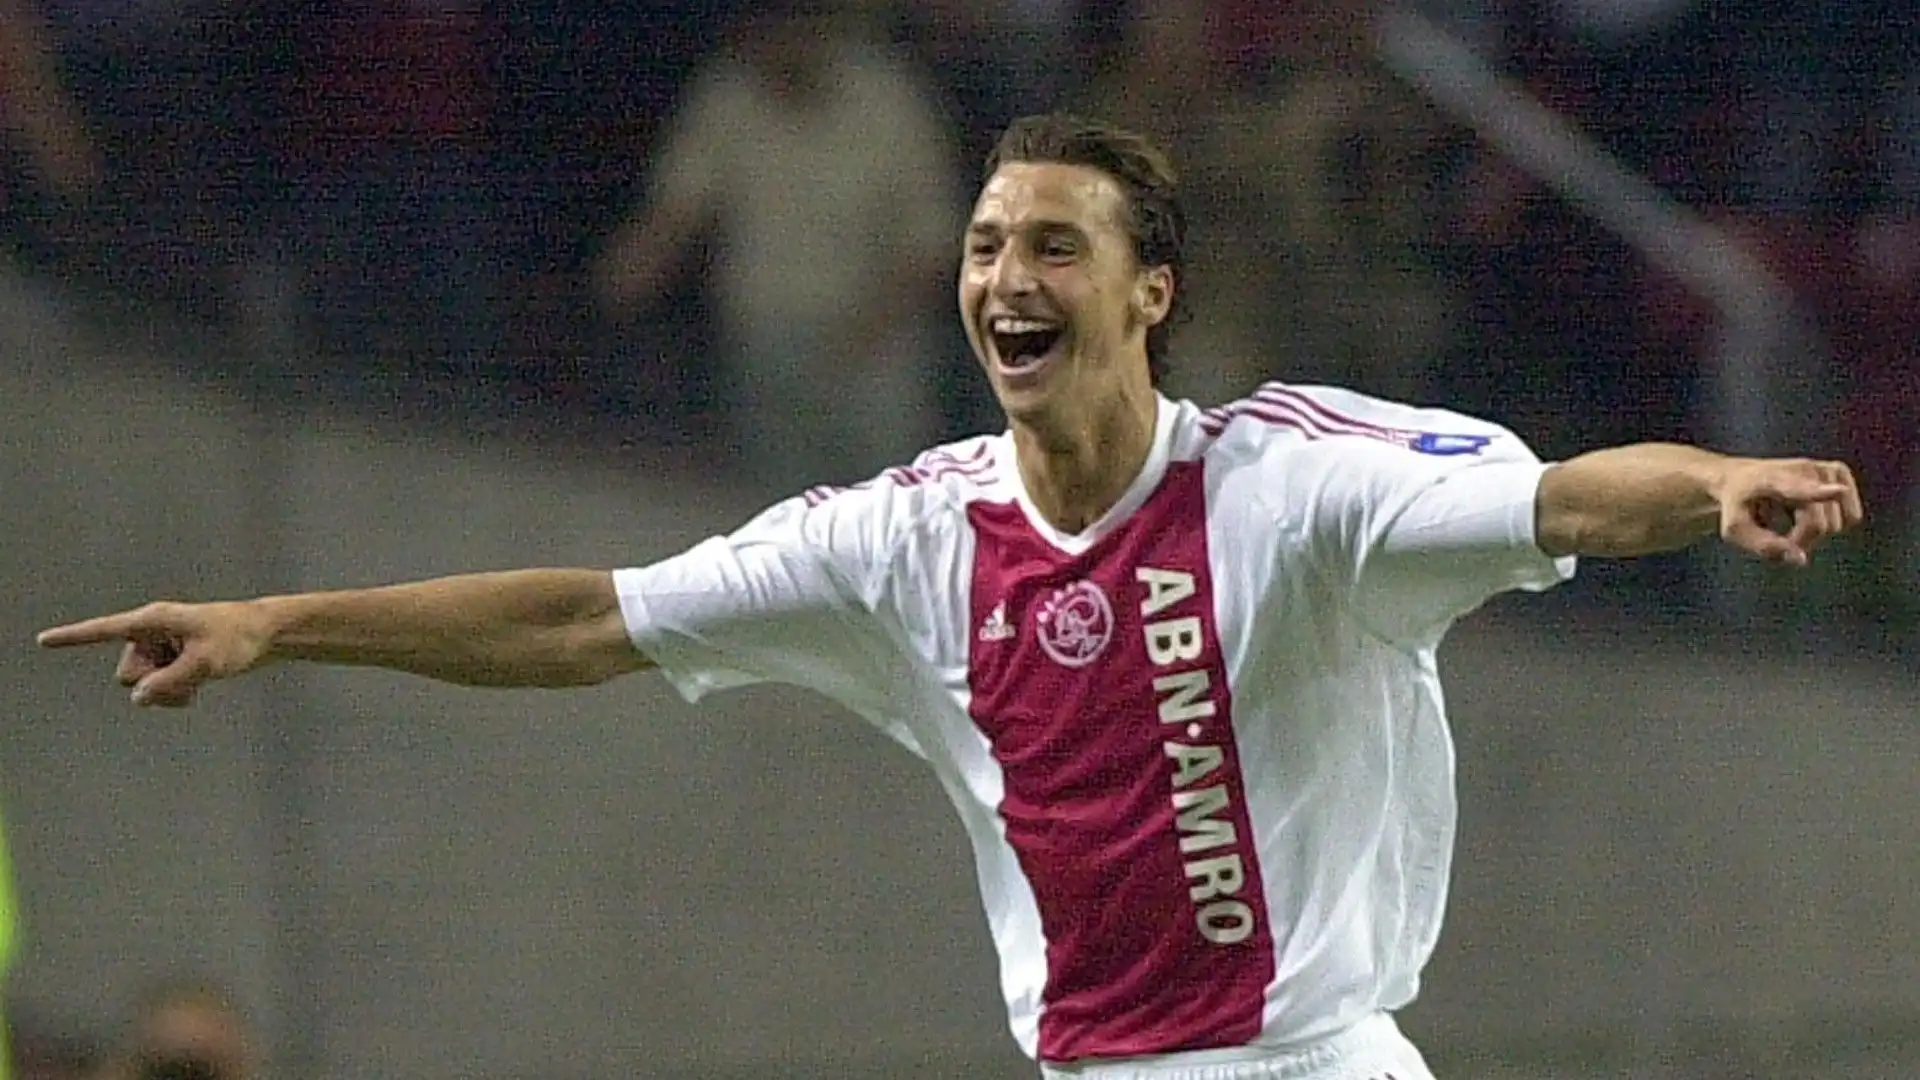 Ibra ha iniziato a giocare a calcio in Svezia, poi nell'estate del 2001 è approdato all'Ajax